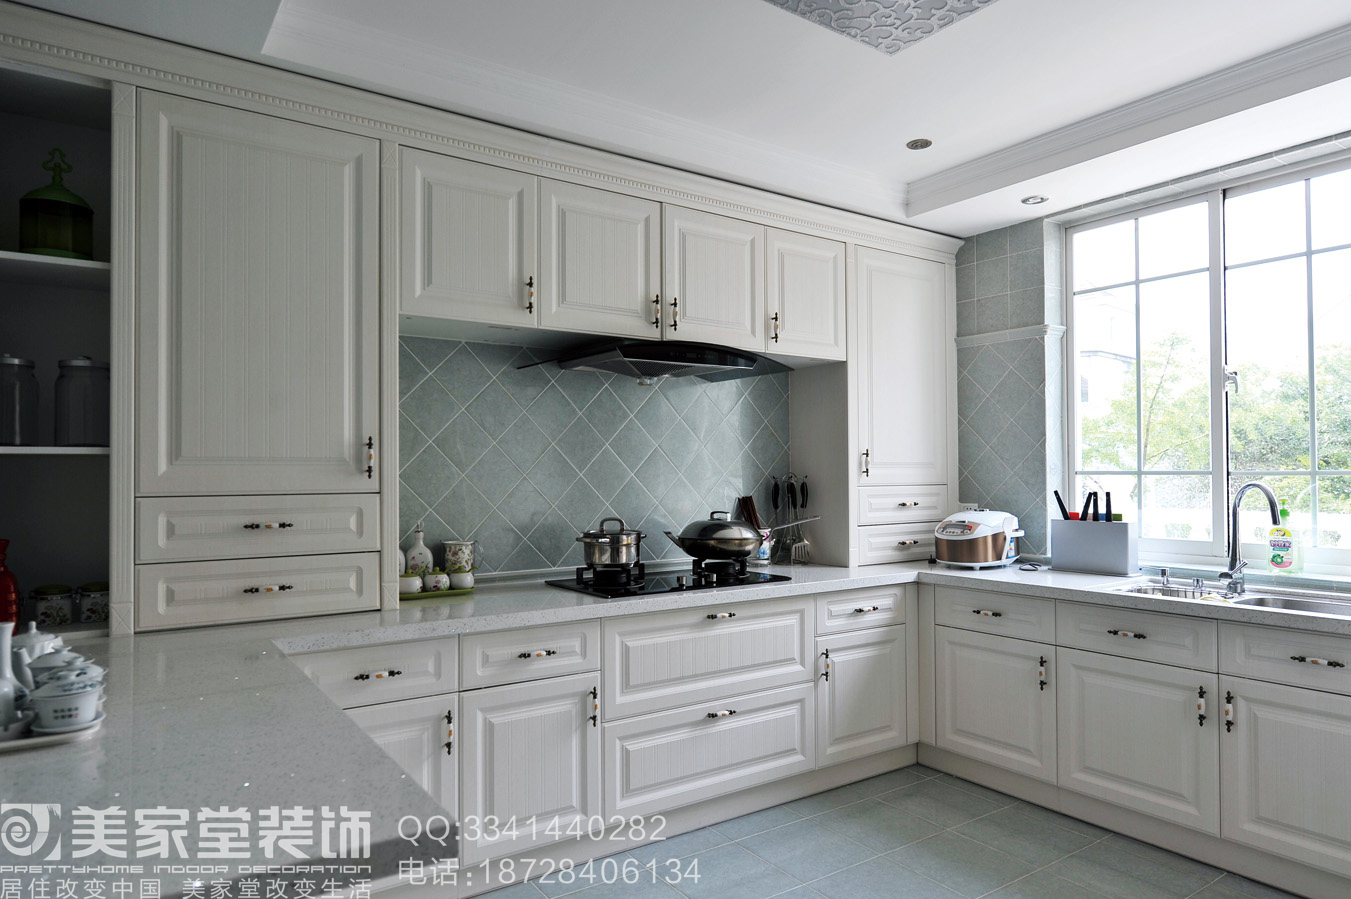 欧式 别墅 装修设计 厨房图片来自美家堂装饰小刘在简欧风格装修设计_美家堂装饰的分享